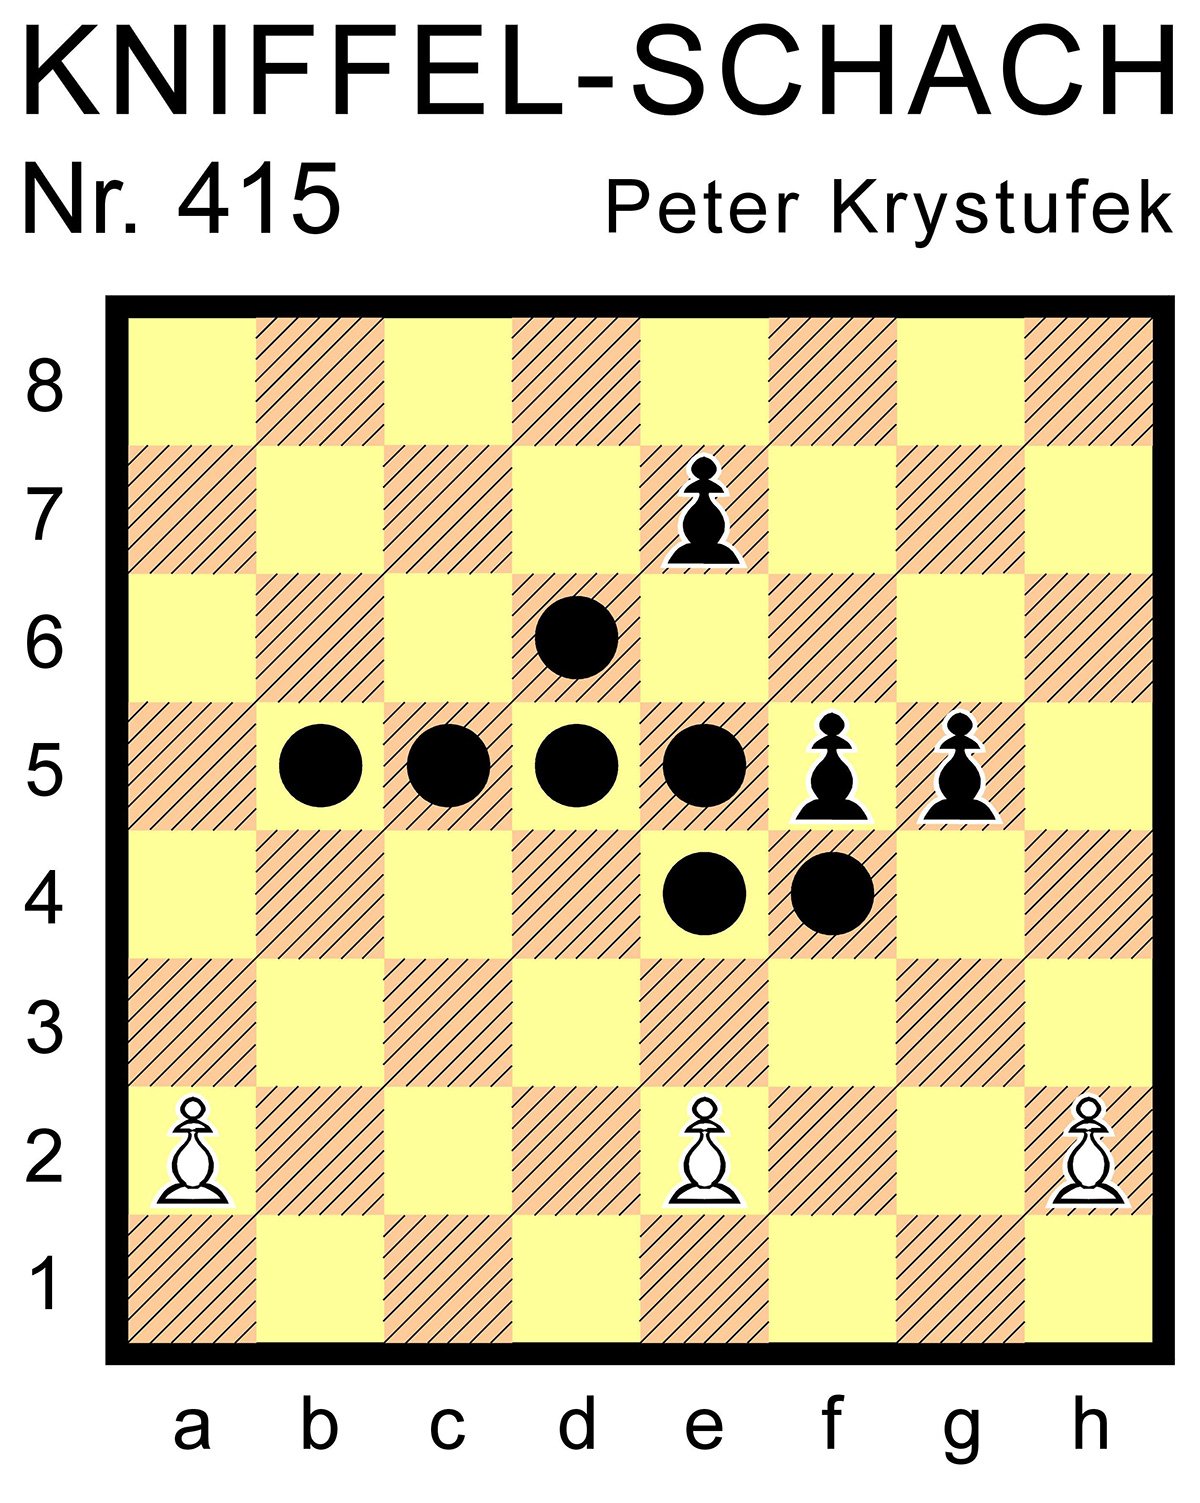 Kniffel-Schach Nr. 415